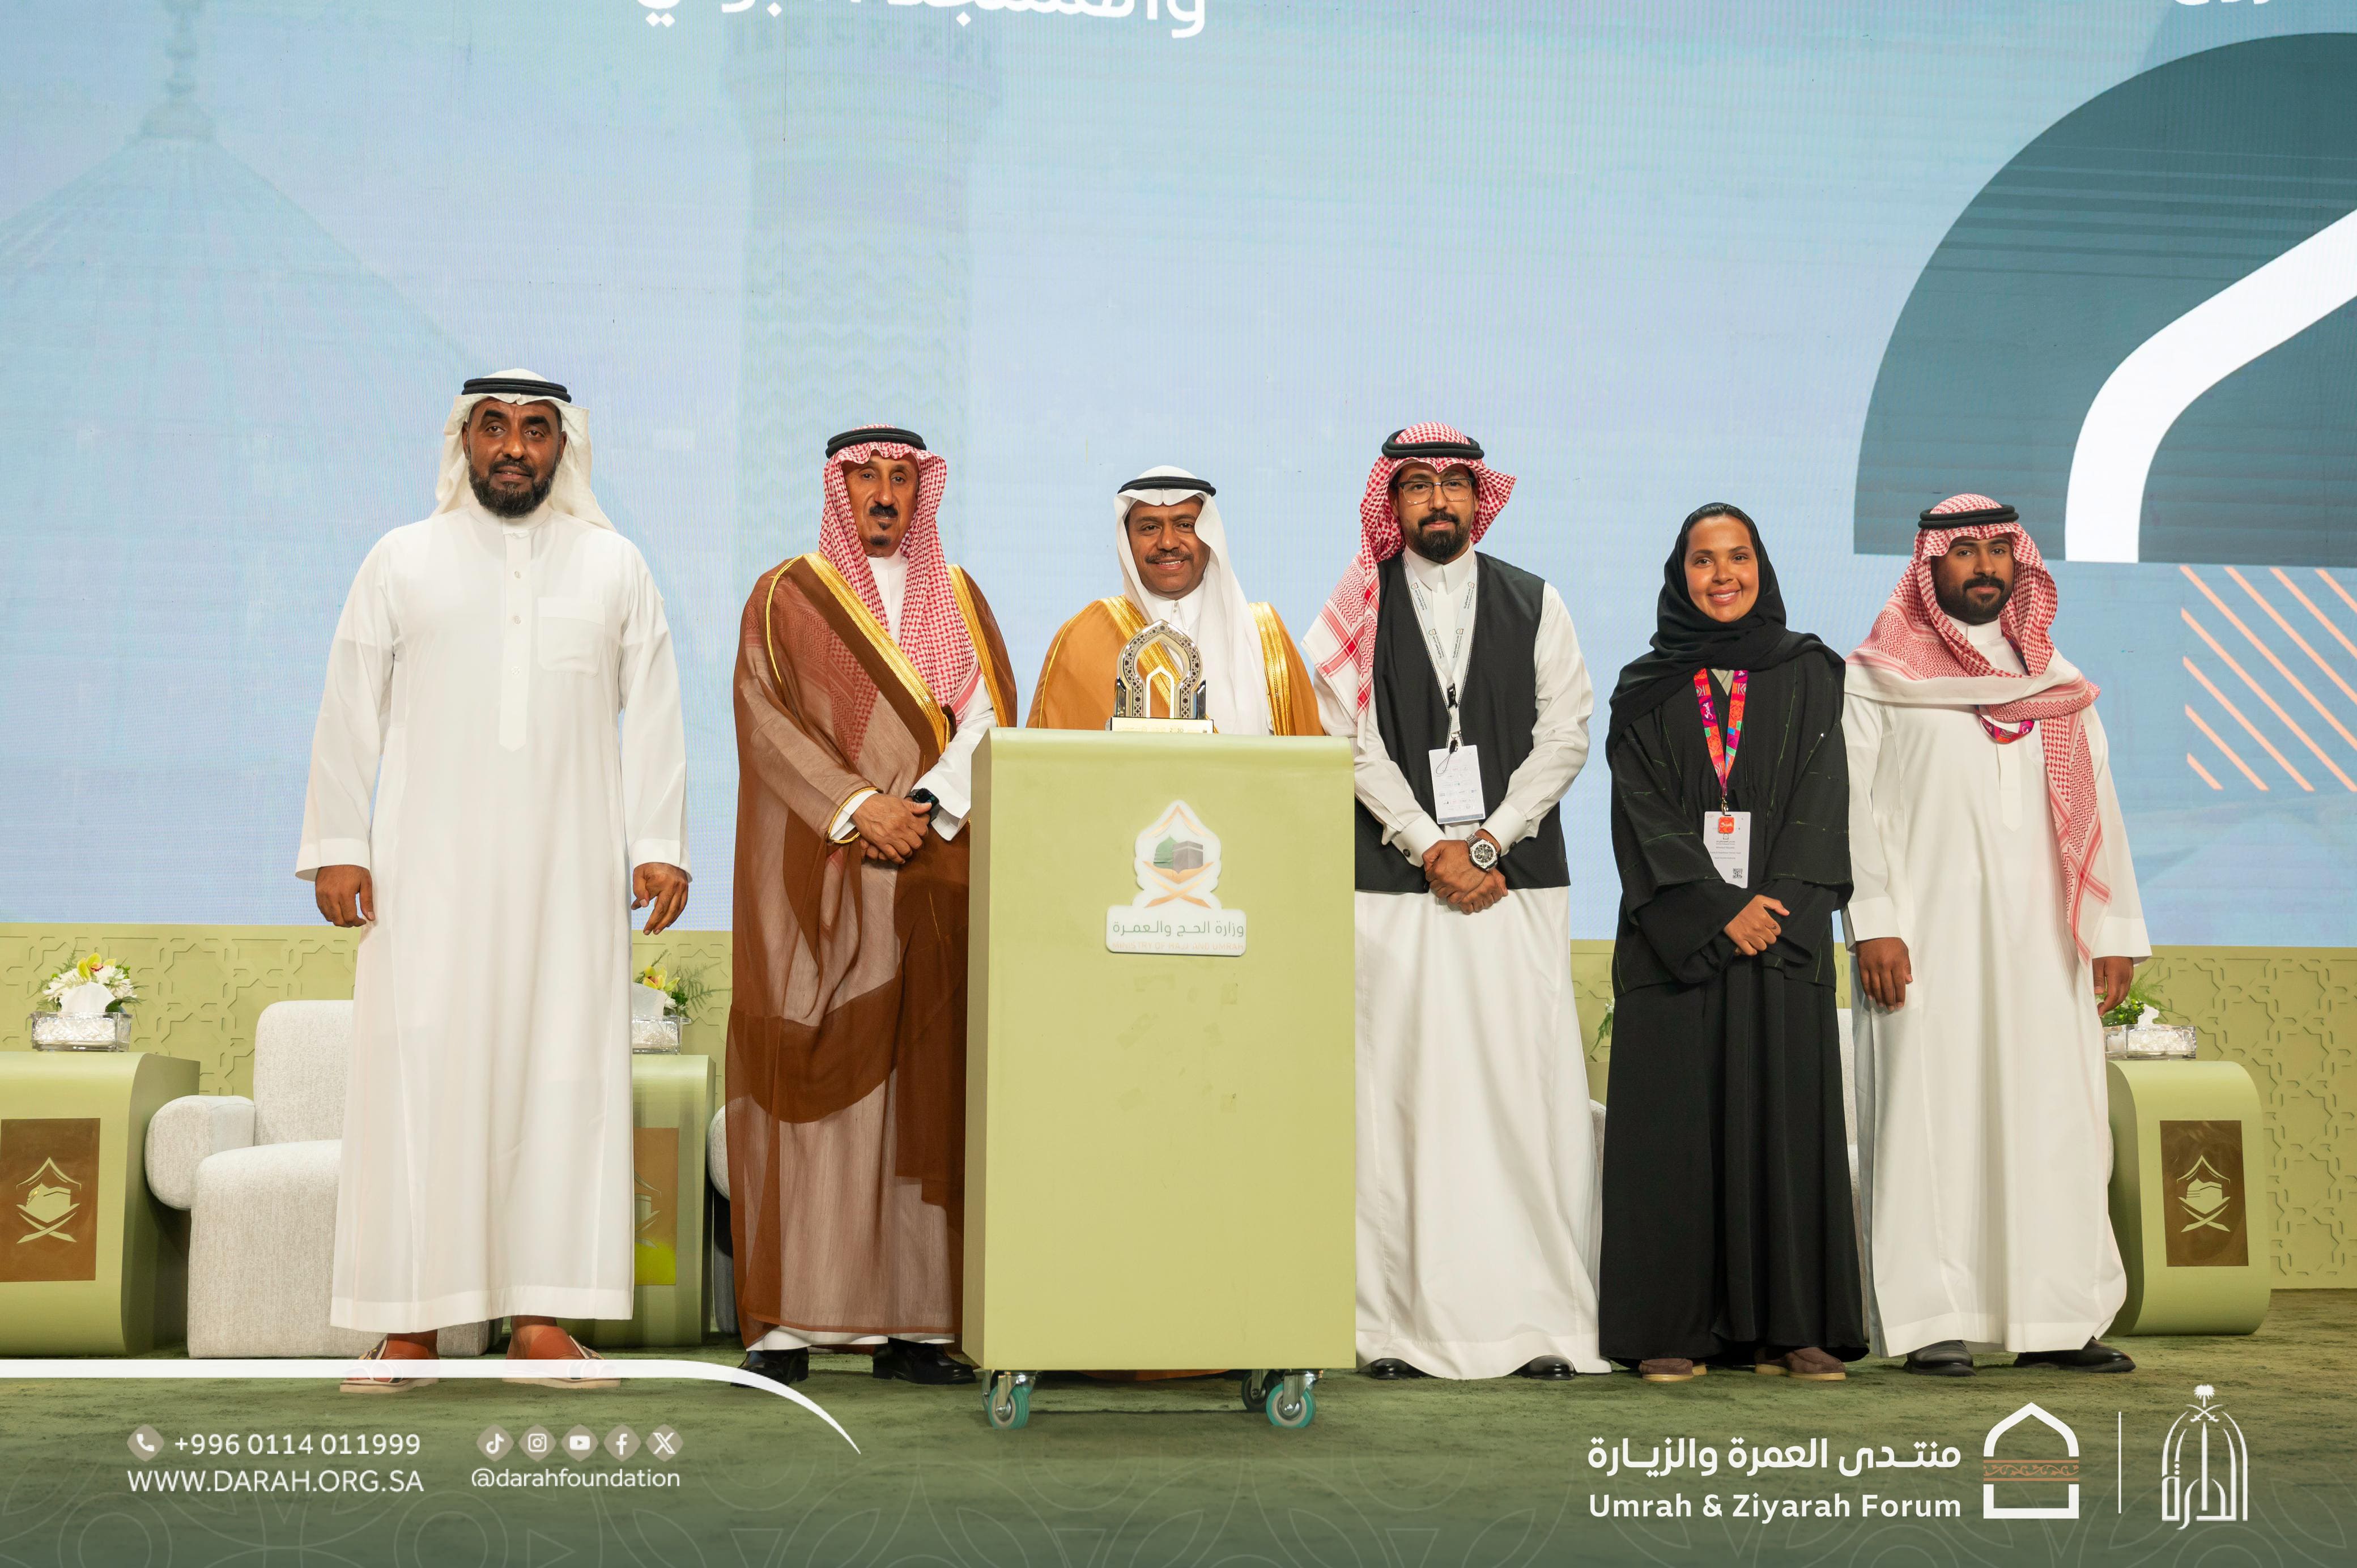 دارة الملك عبدالعزيز تفوز بجائزة لمشاركتها الإثرائية المتميزة في منتدى العمرة والزيارة